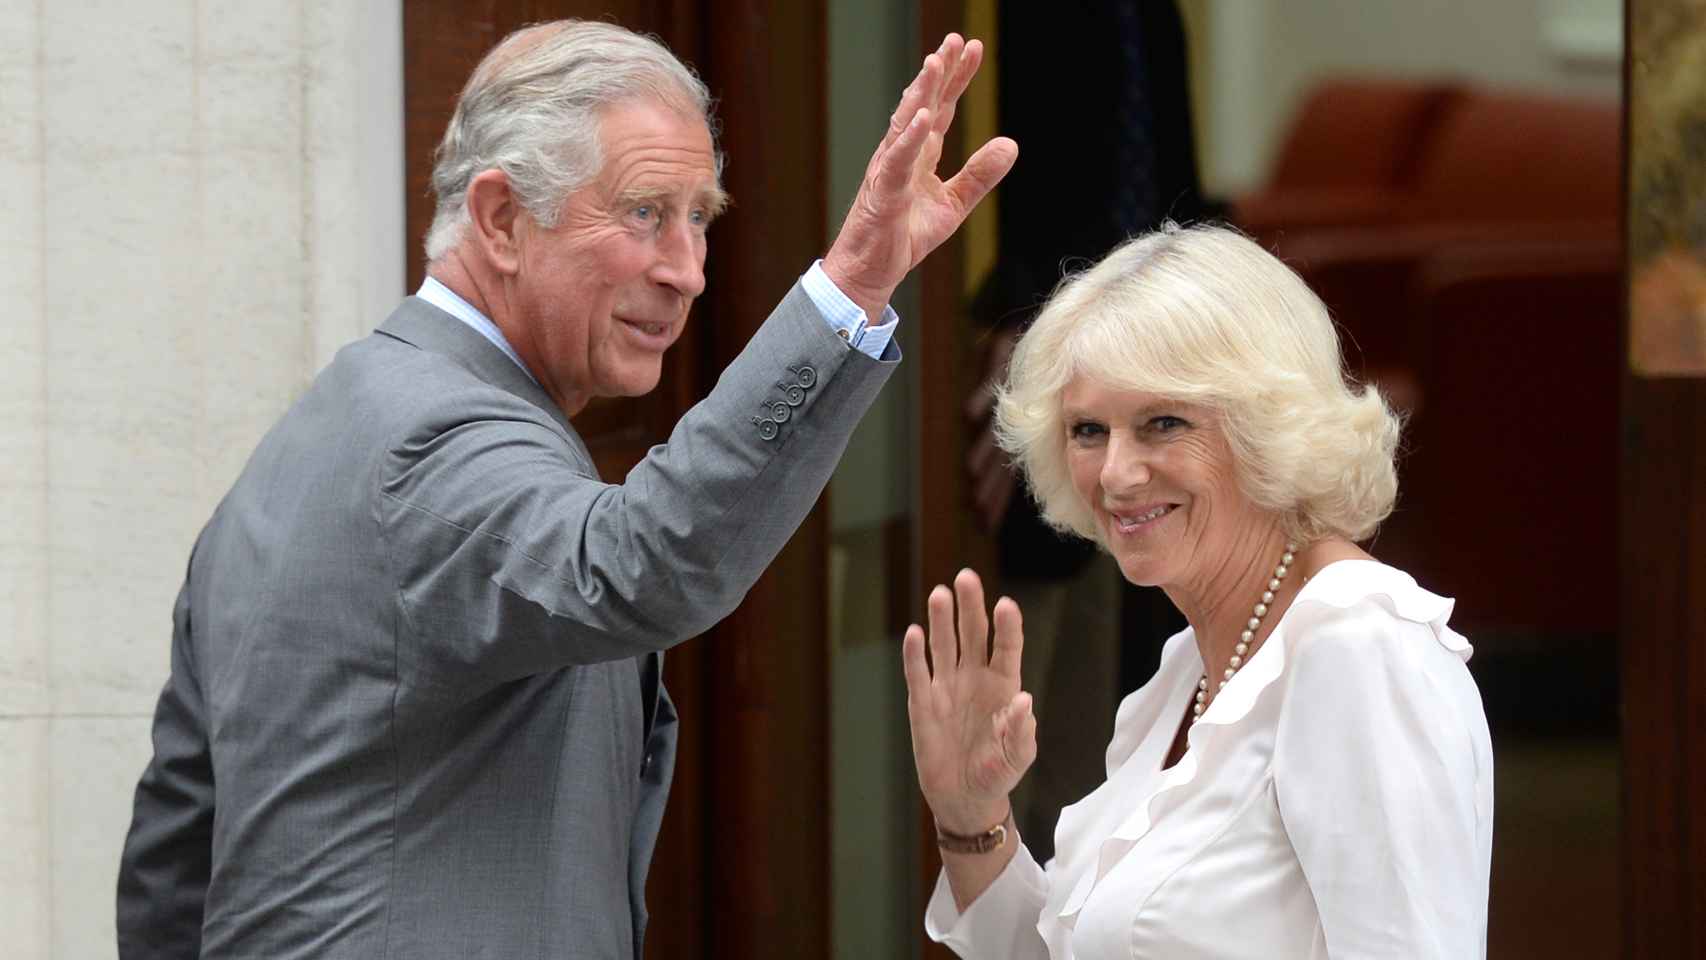 Carlos de Inglaterra y Camilla Parker-Bowles se encuentran positivos por coronavirus.